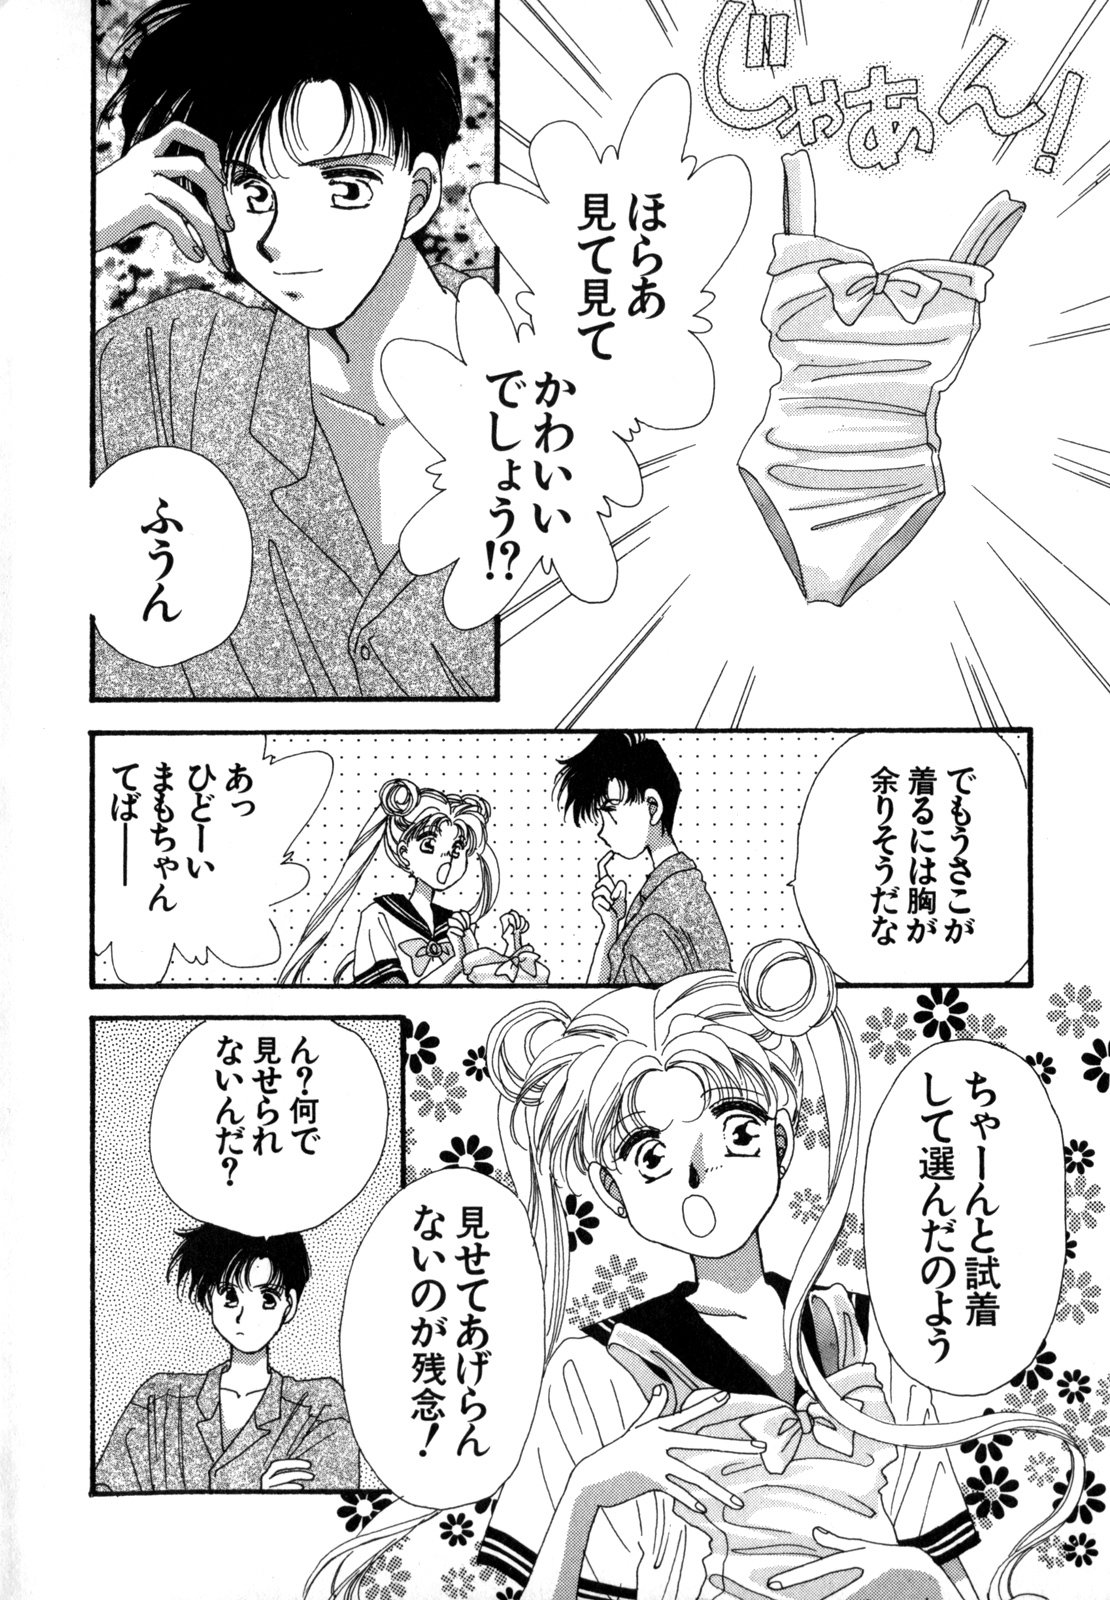 [Anthology] Lunatic Party 4 (Bishoujo Senshi Sailor Moon) page 5 full